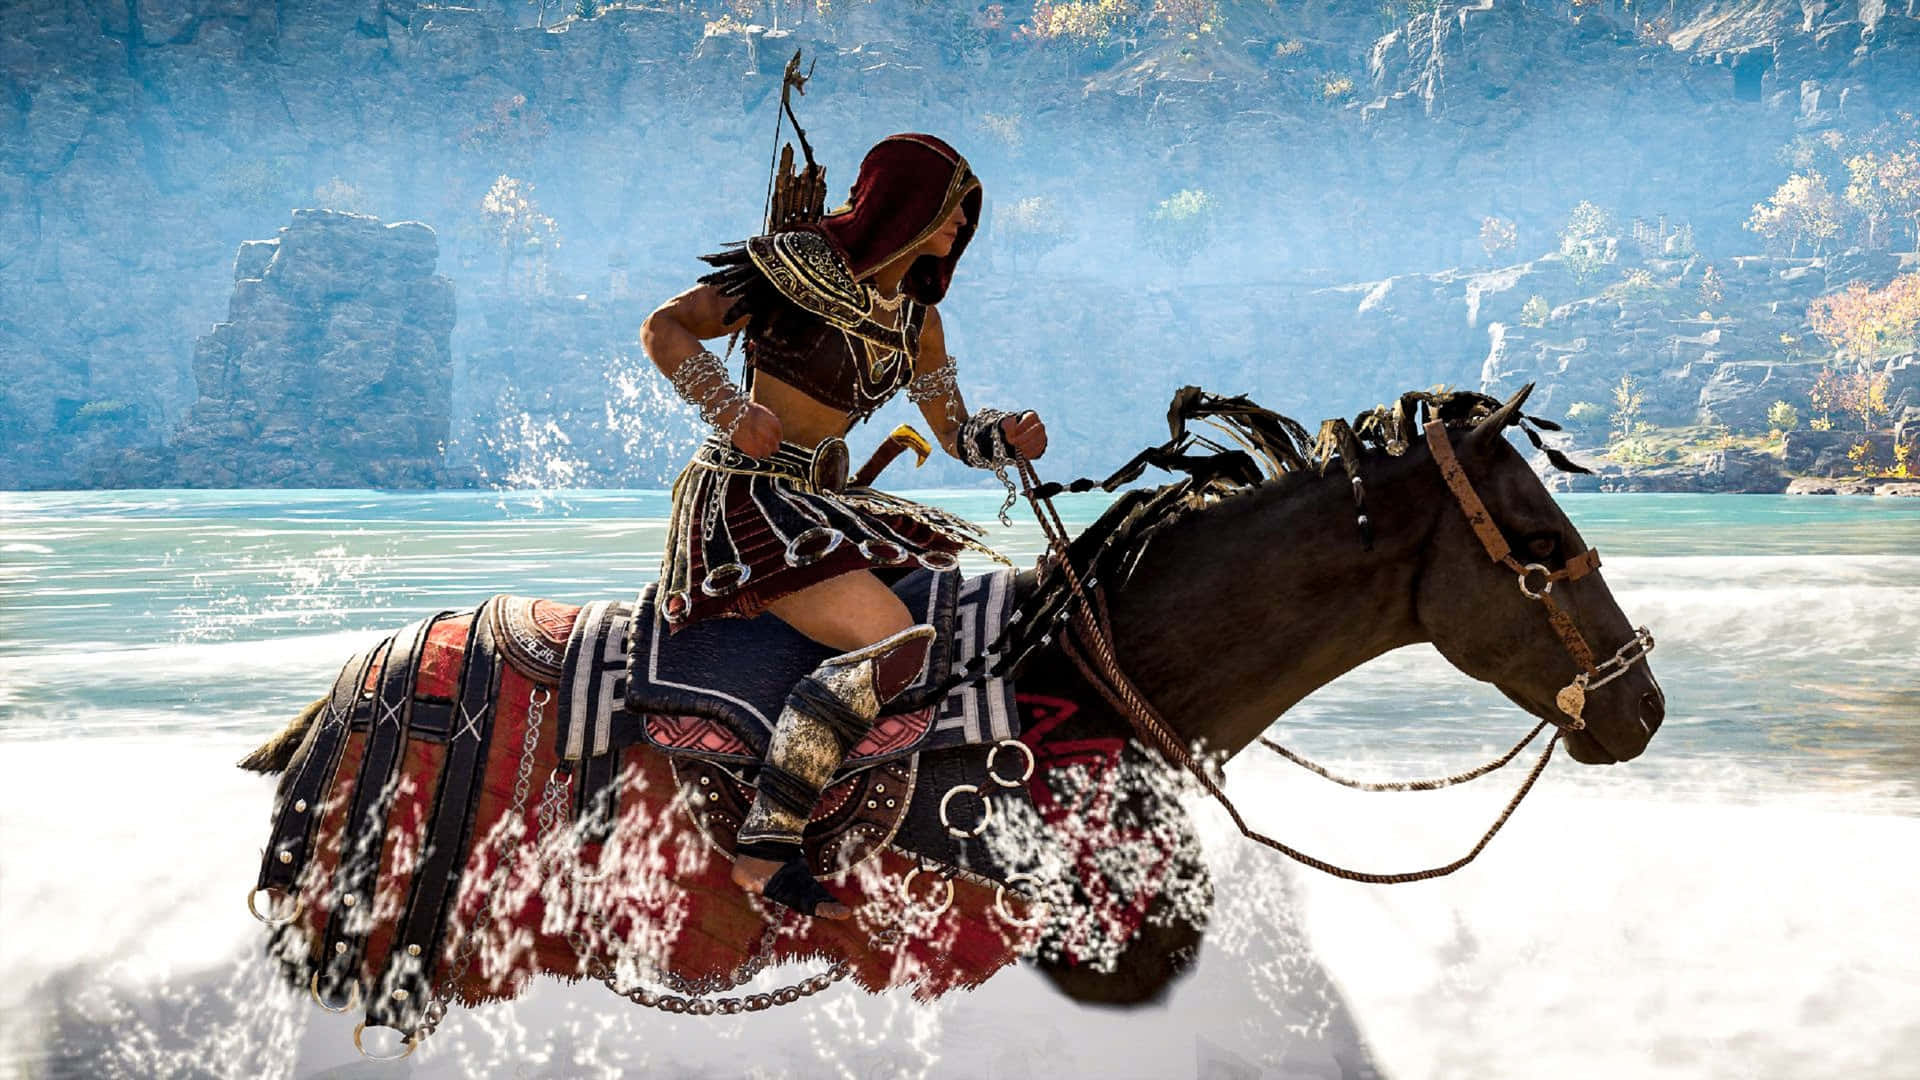 1920x1080sfondo Di Assassin's Creed Odyssey Con Protagonista In Sella A Cavallo.